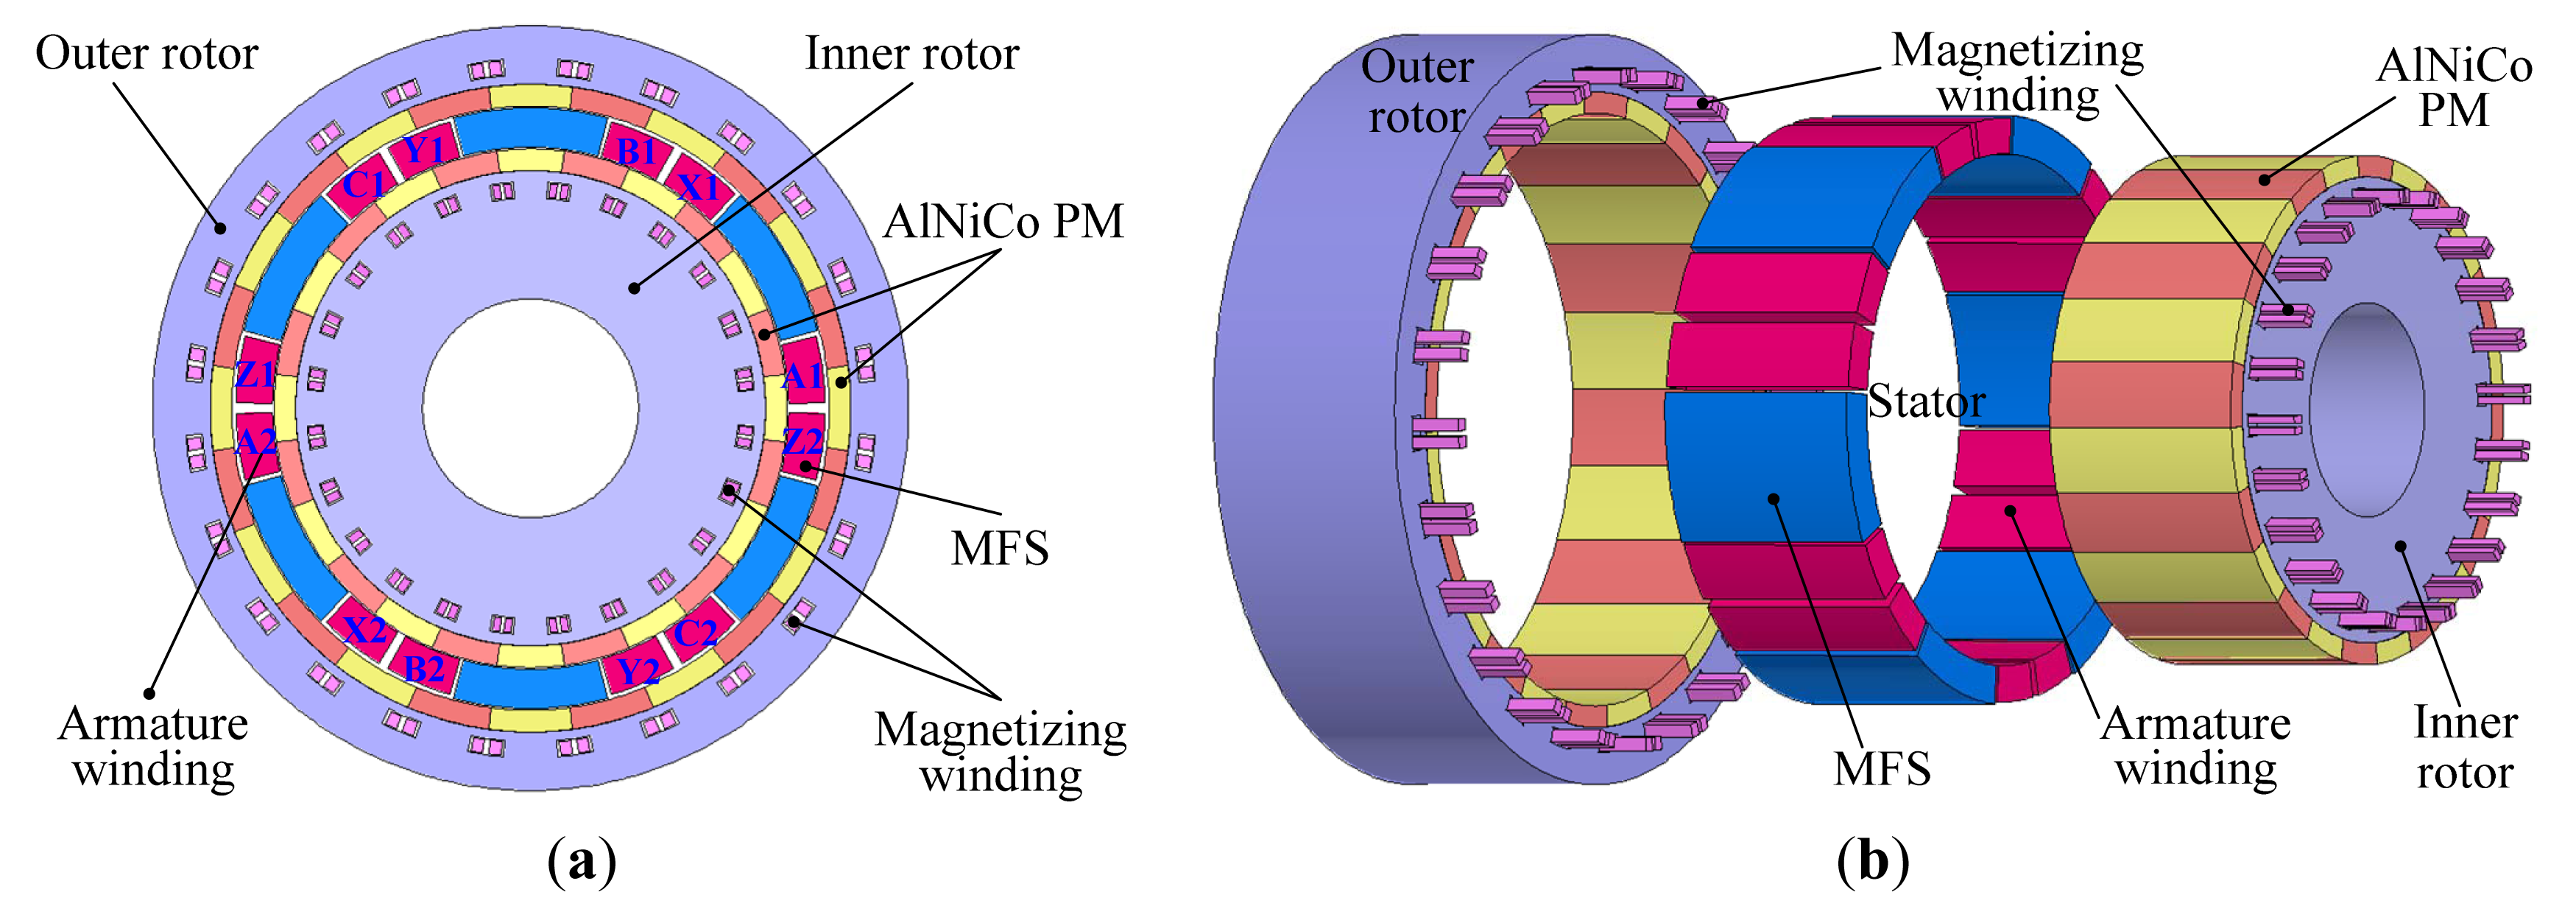 国外自动化设计工程师对磁力轮实际应用的评价